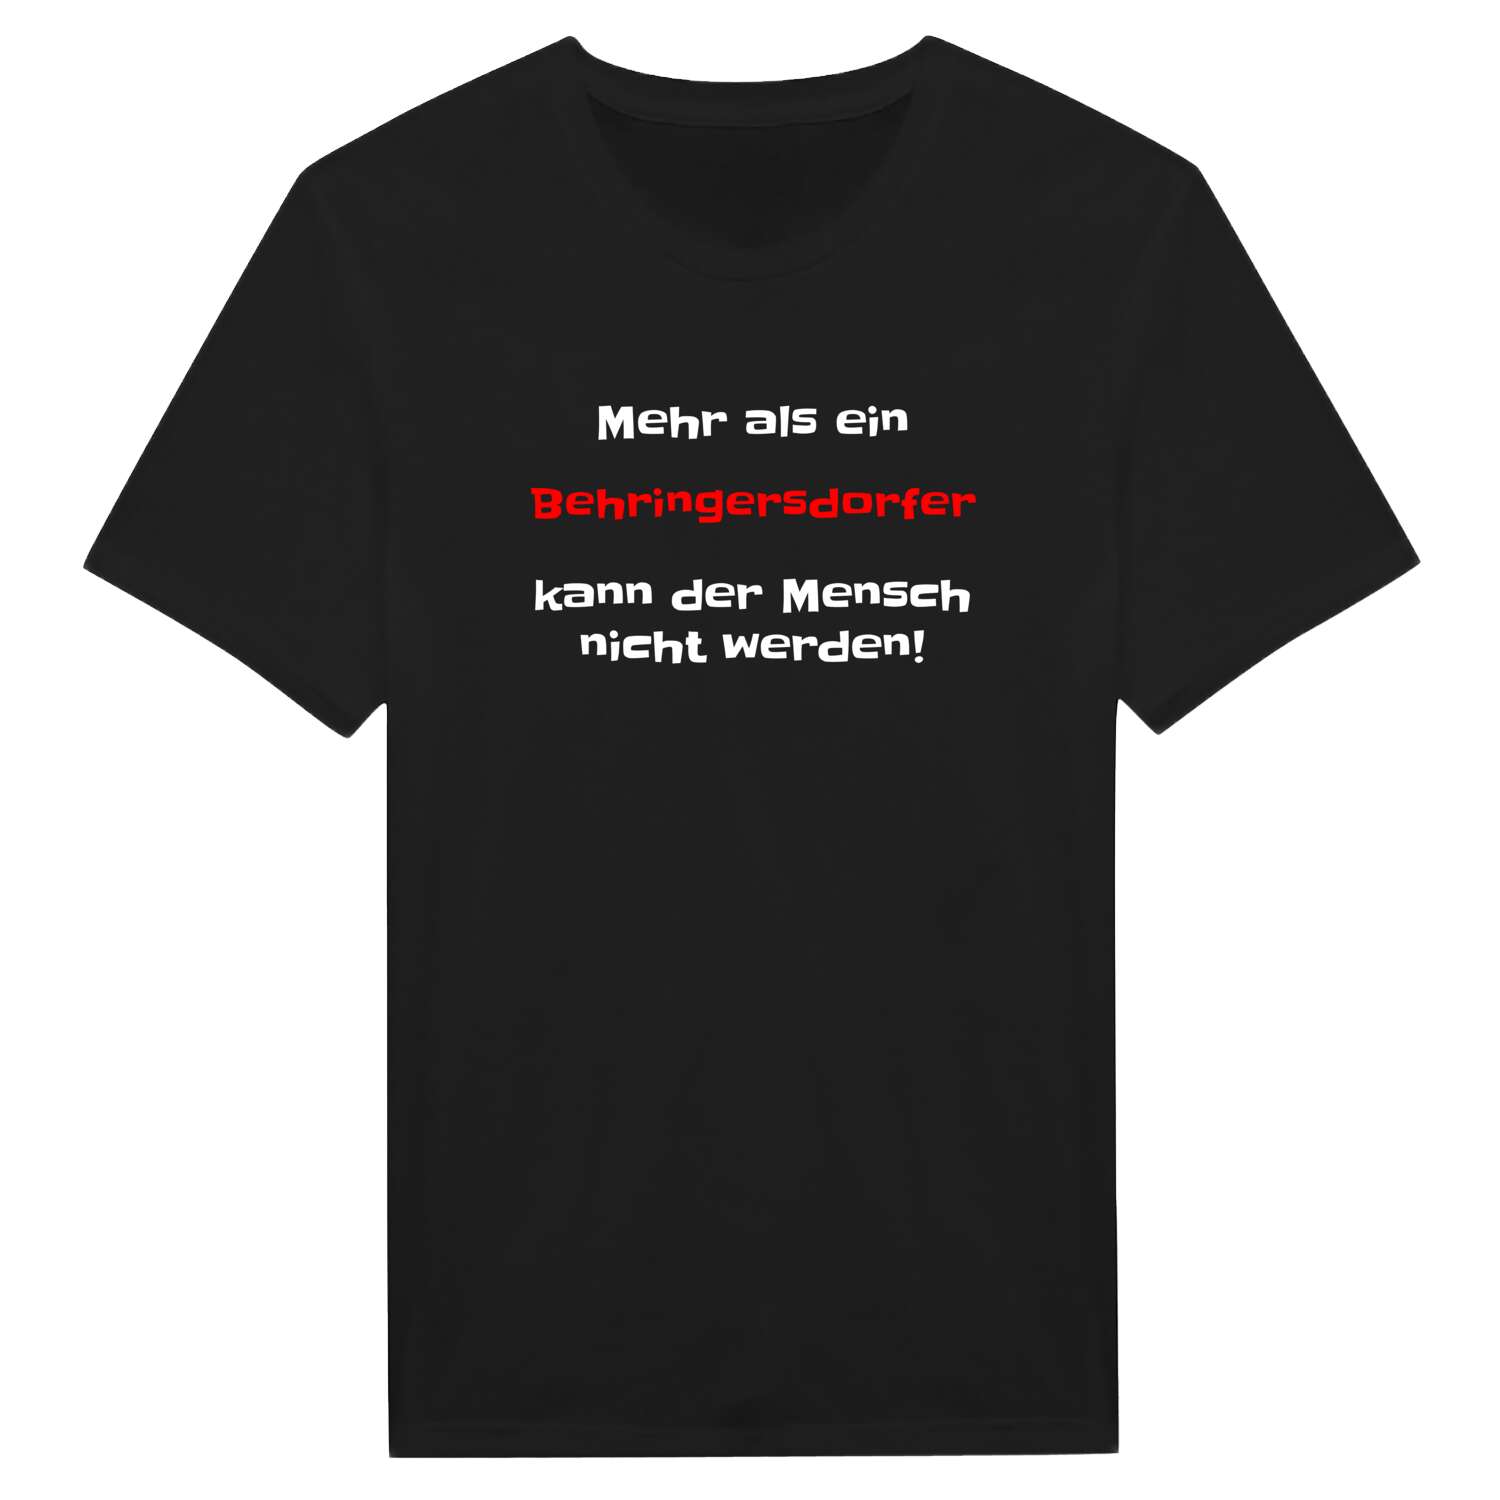 Behringersdorf T-Shirt »Mehr als ein«